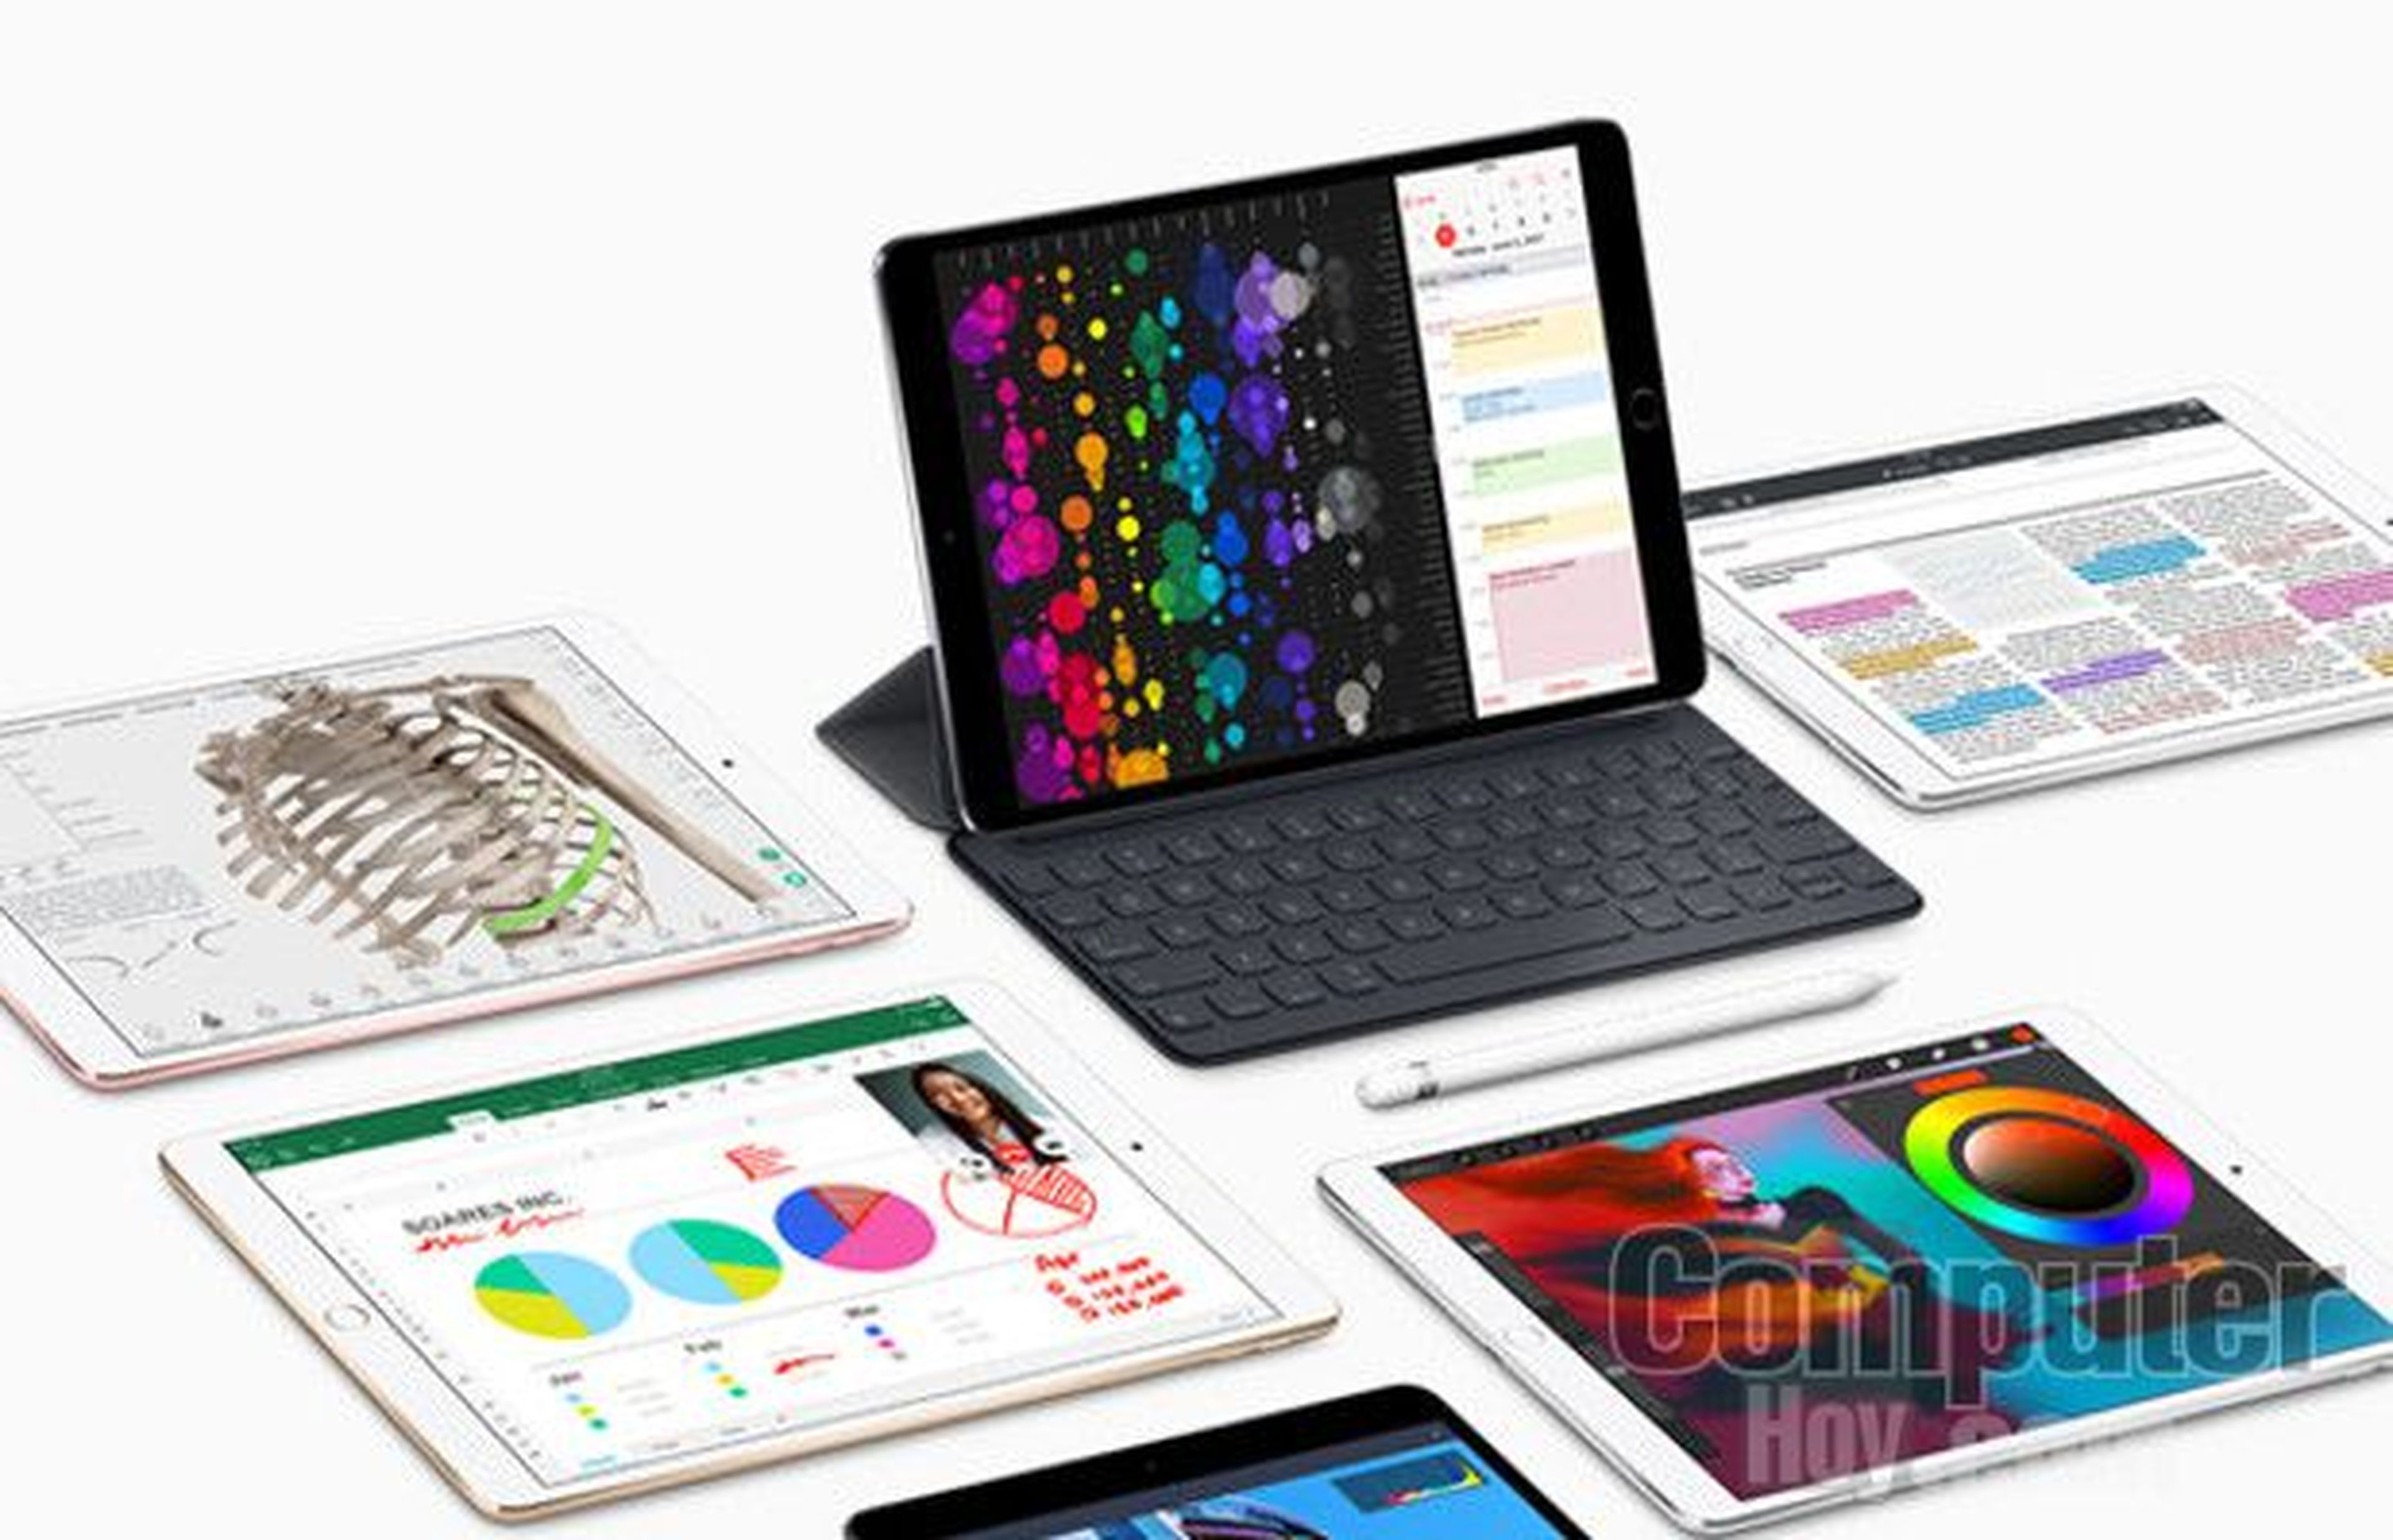 iPad Pro de 2017: el modelo de 10,5", la principal novedad